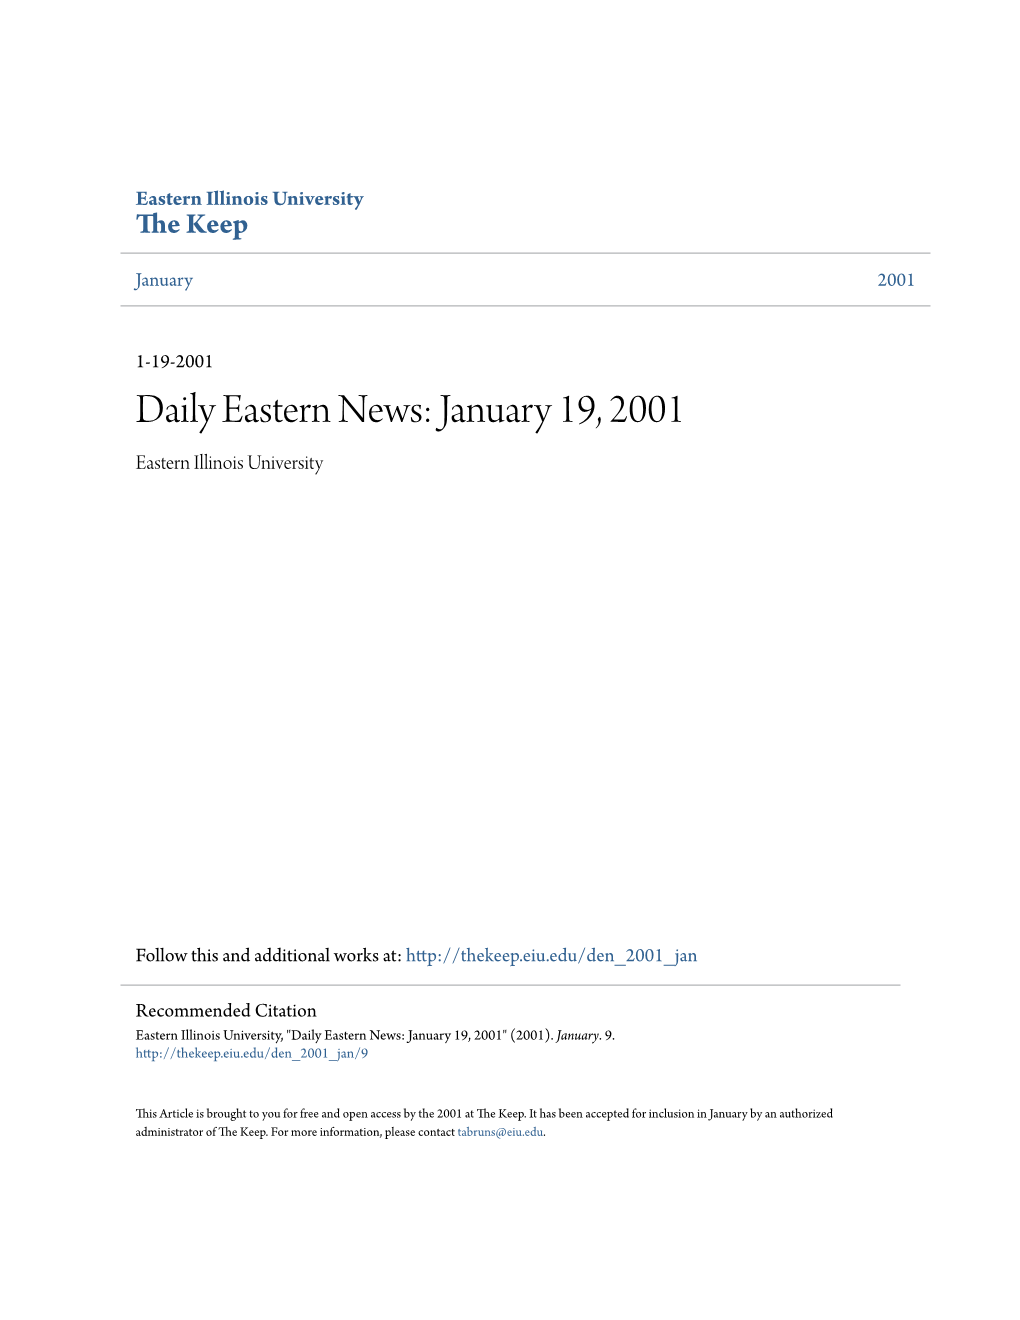 Eastern News: January 19, 2001 Eastern Illinois University